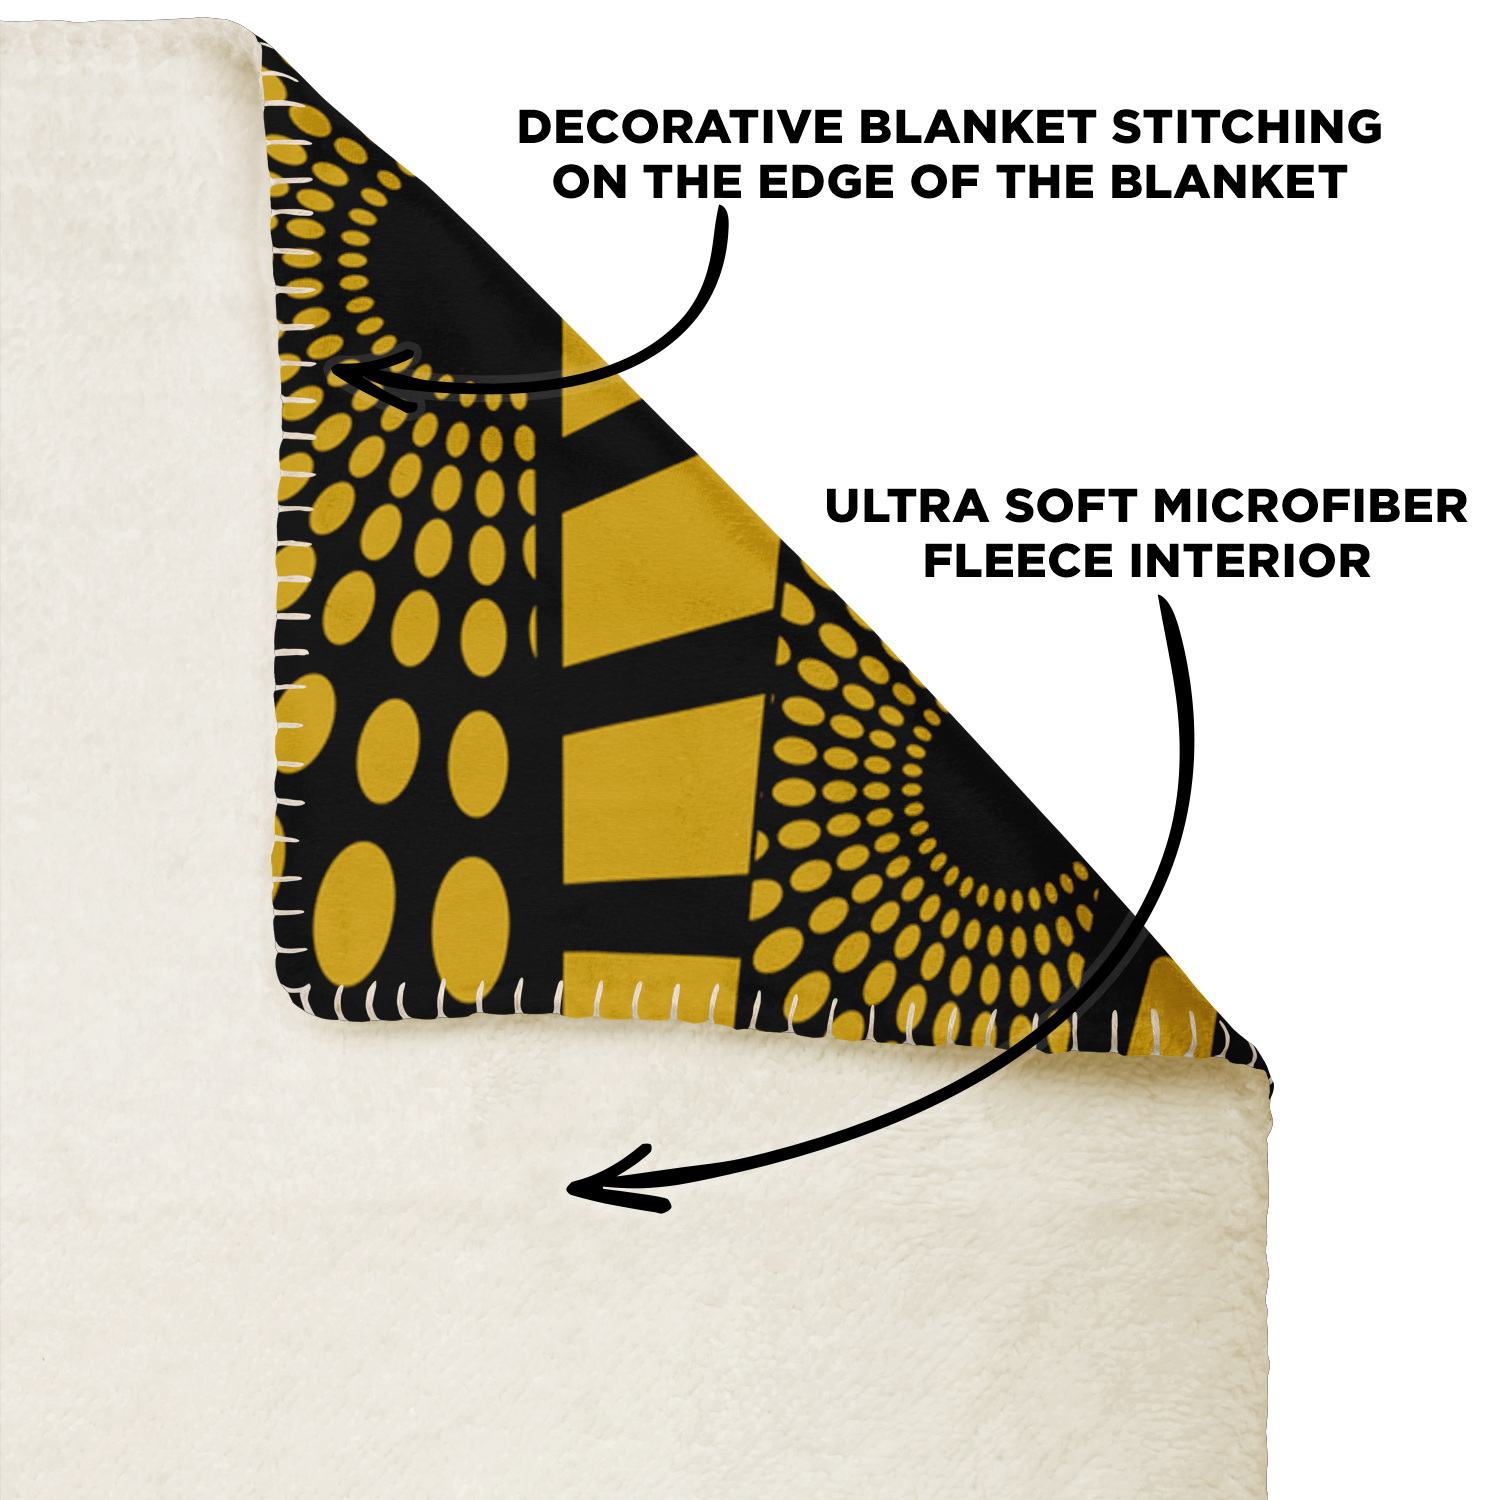 WVSU Yellow Jackets Microfleece Blanket